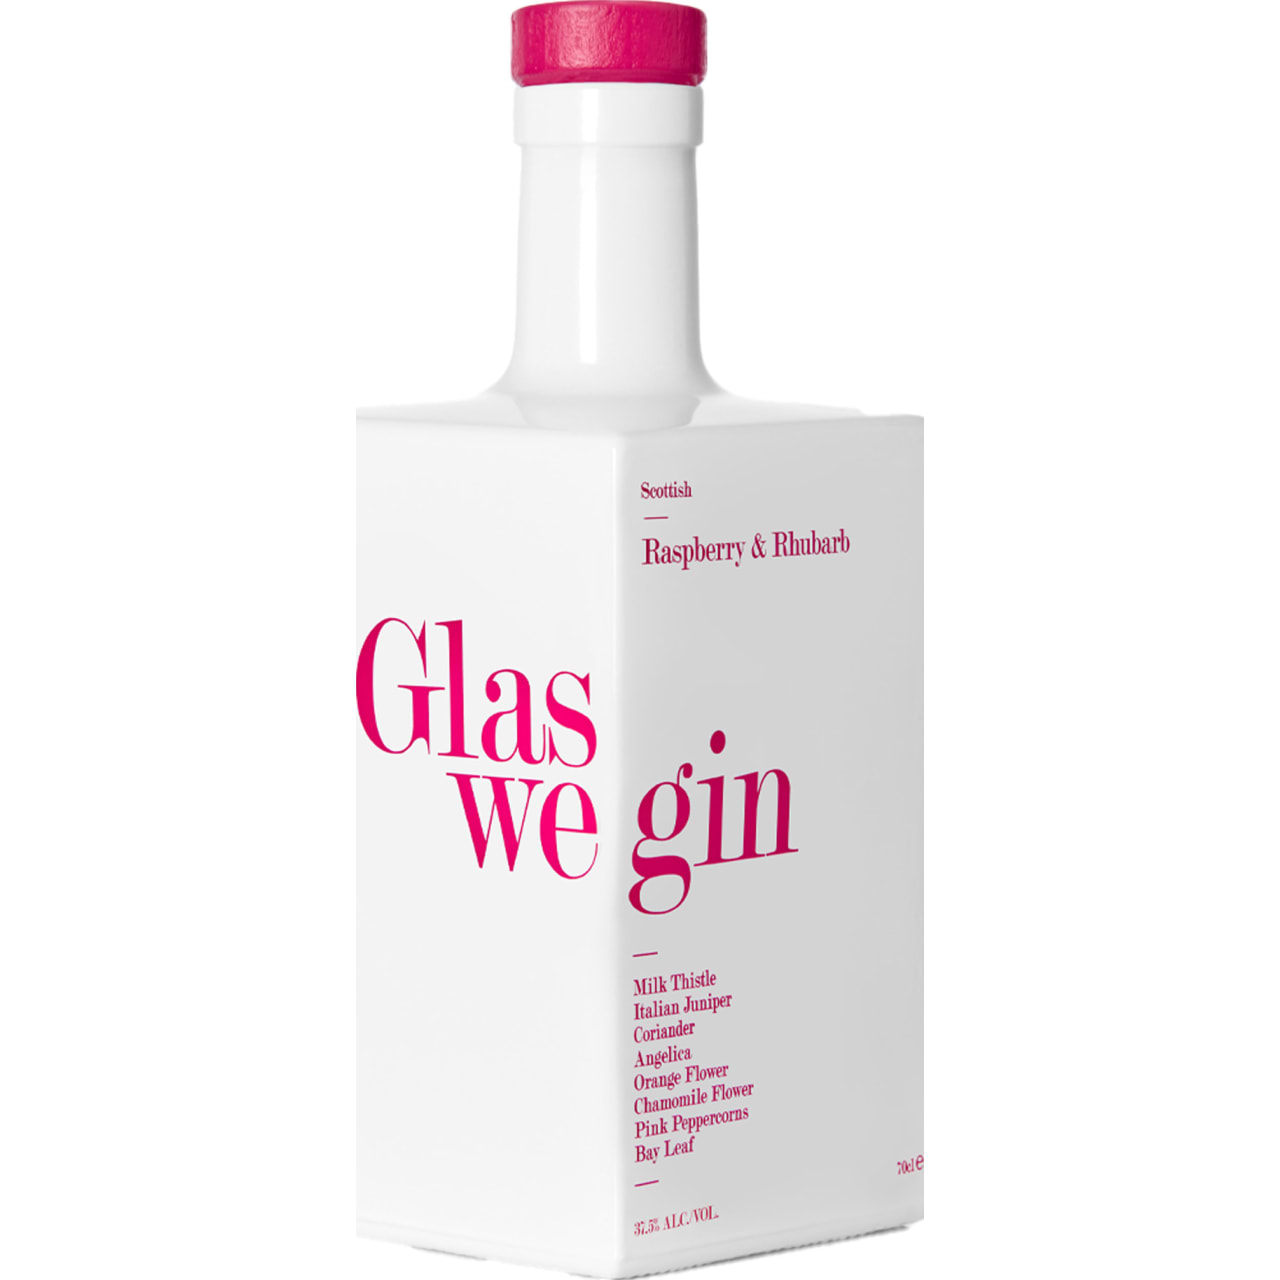 Product Image - Glaswegin Raspberry and Rhubarb Gin